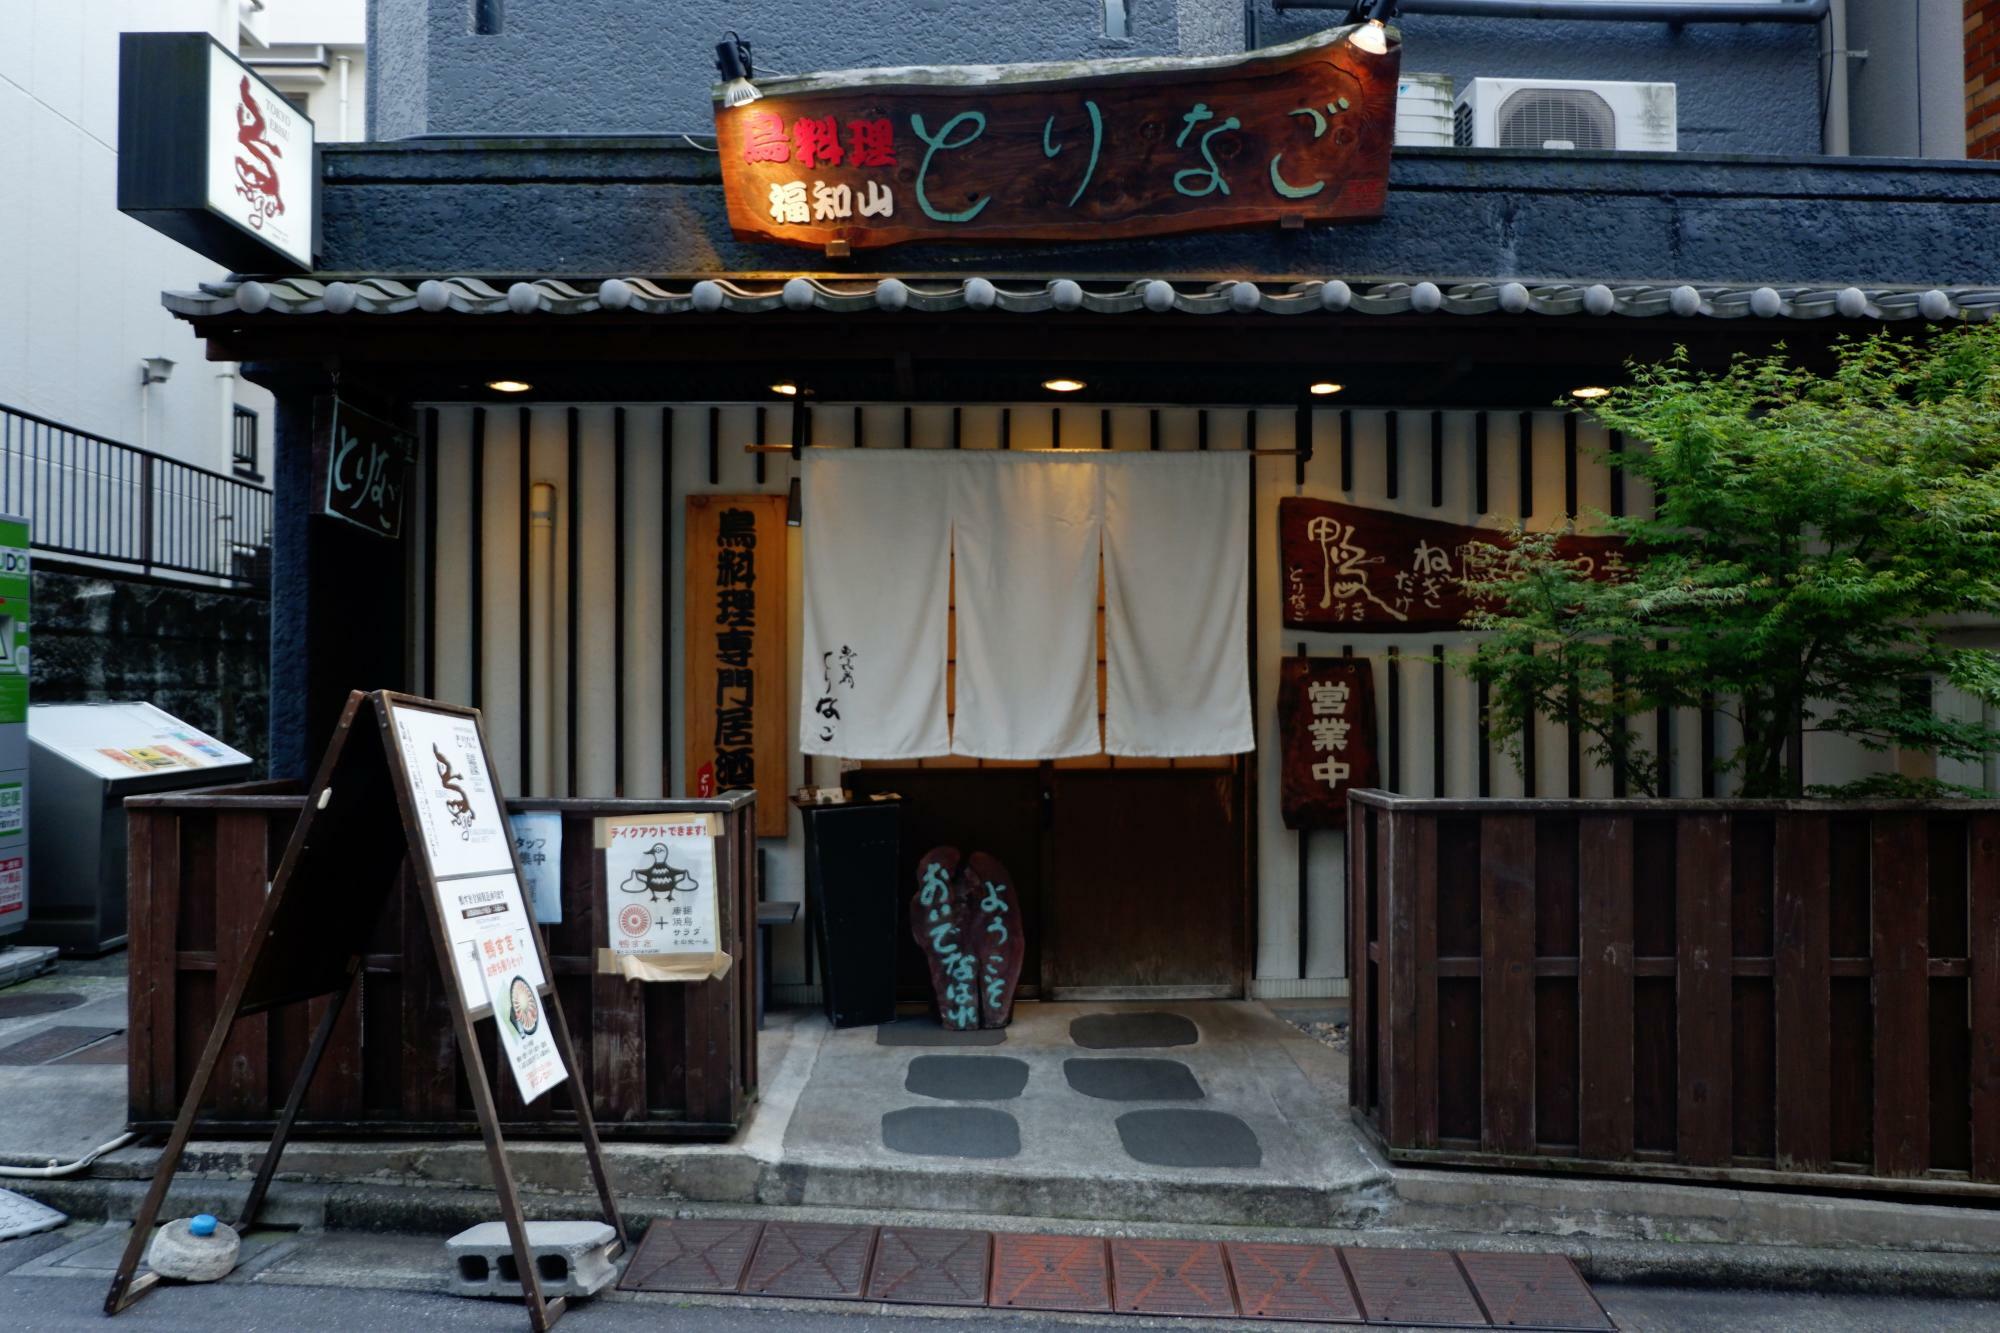 『鳥料理専門居酒屋 とりなご 恵比寿店』はJR恵比寿駅東口から徒歩10分ほど